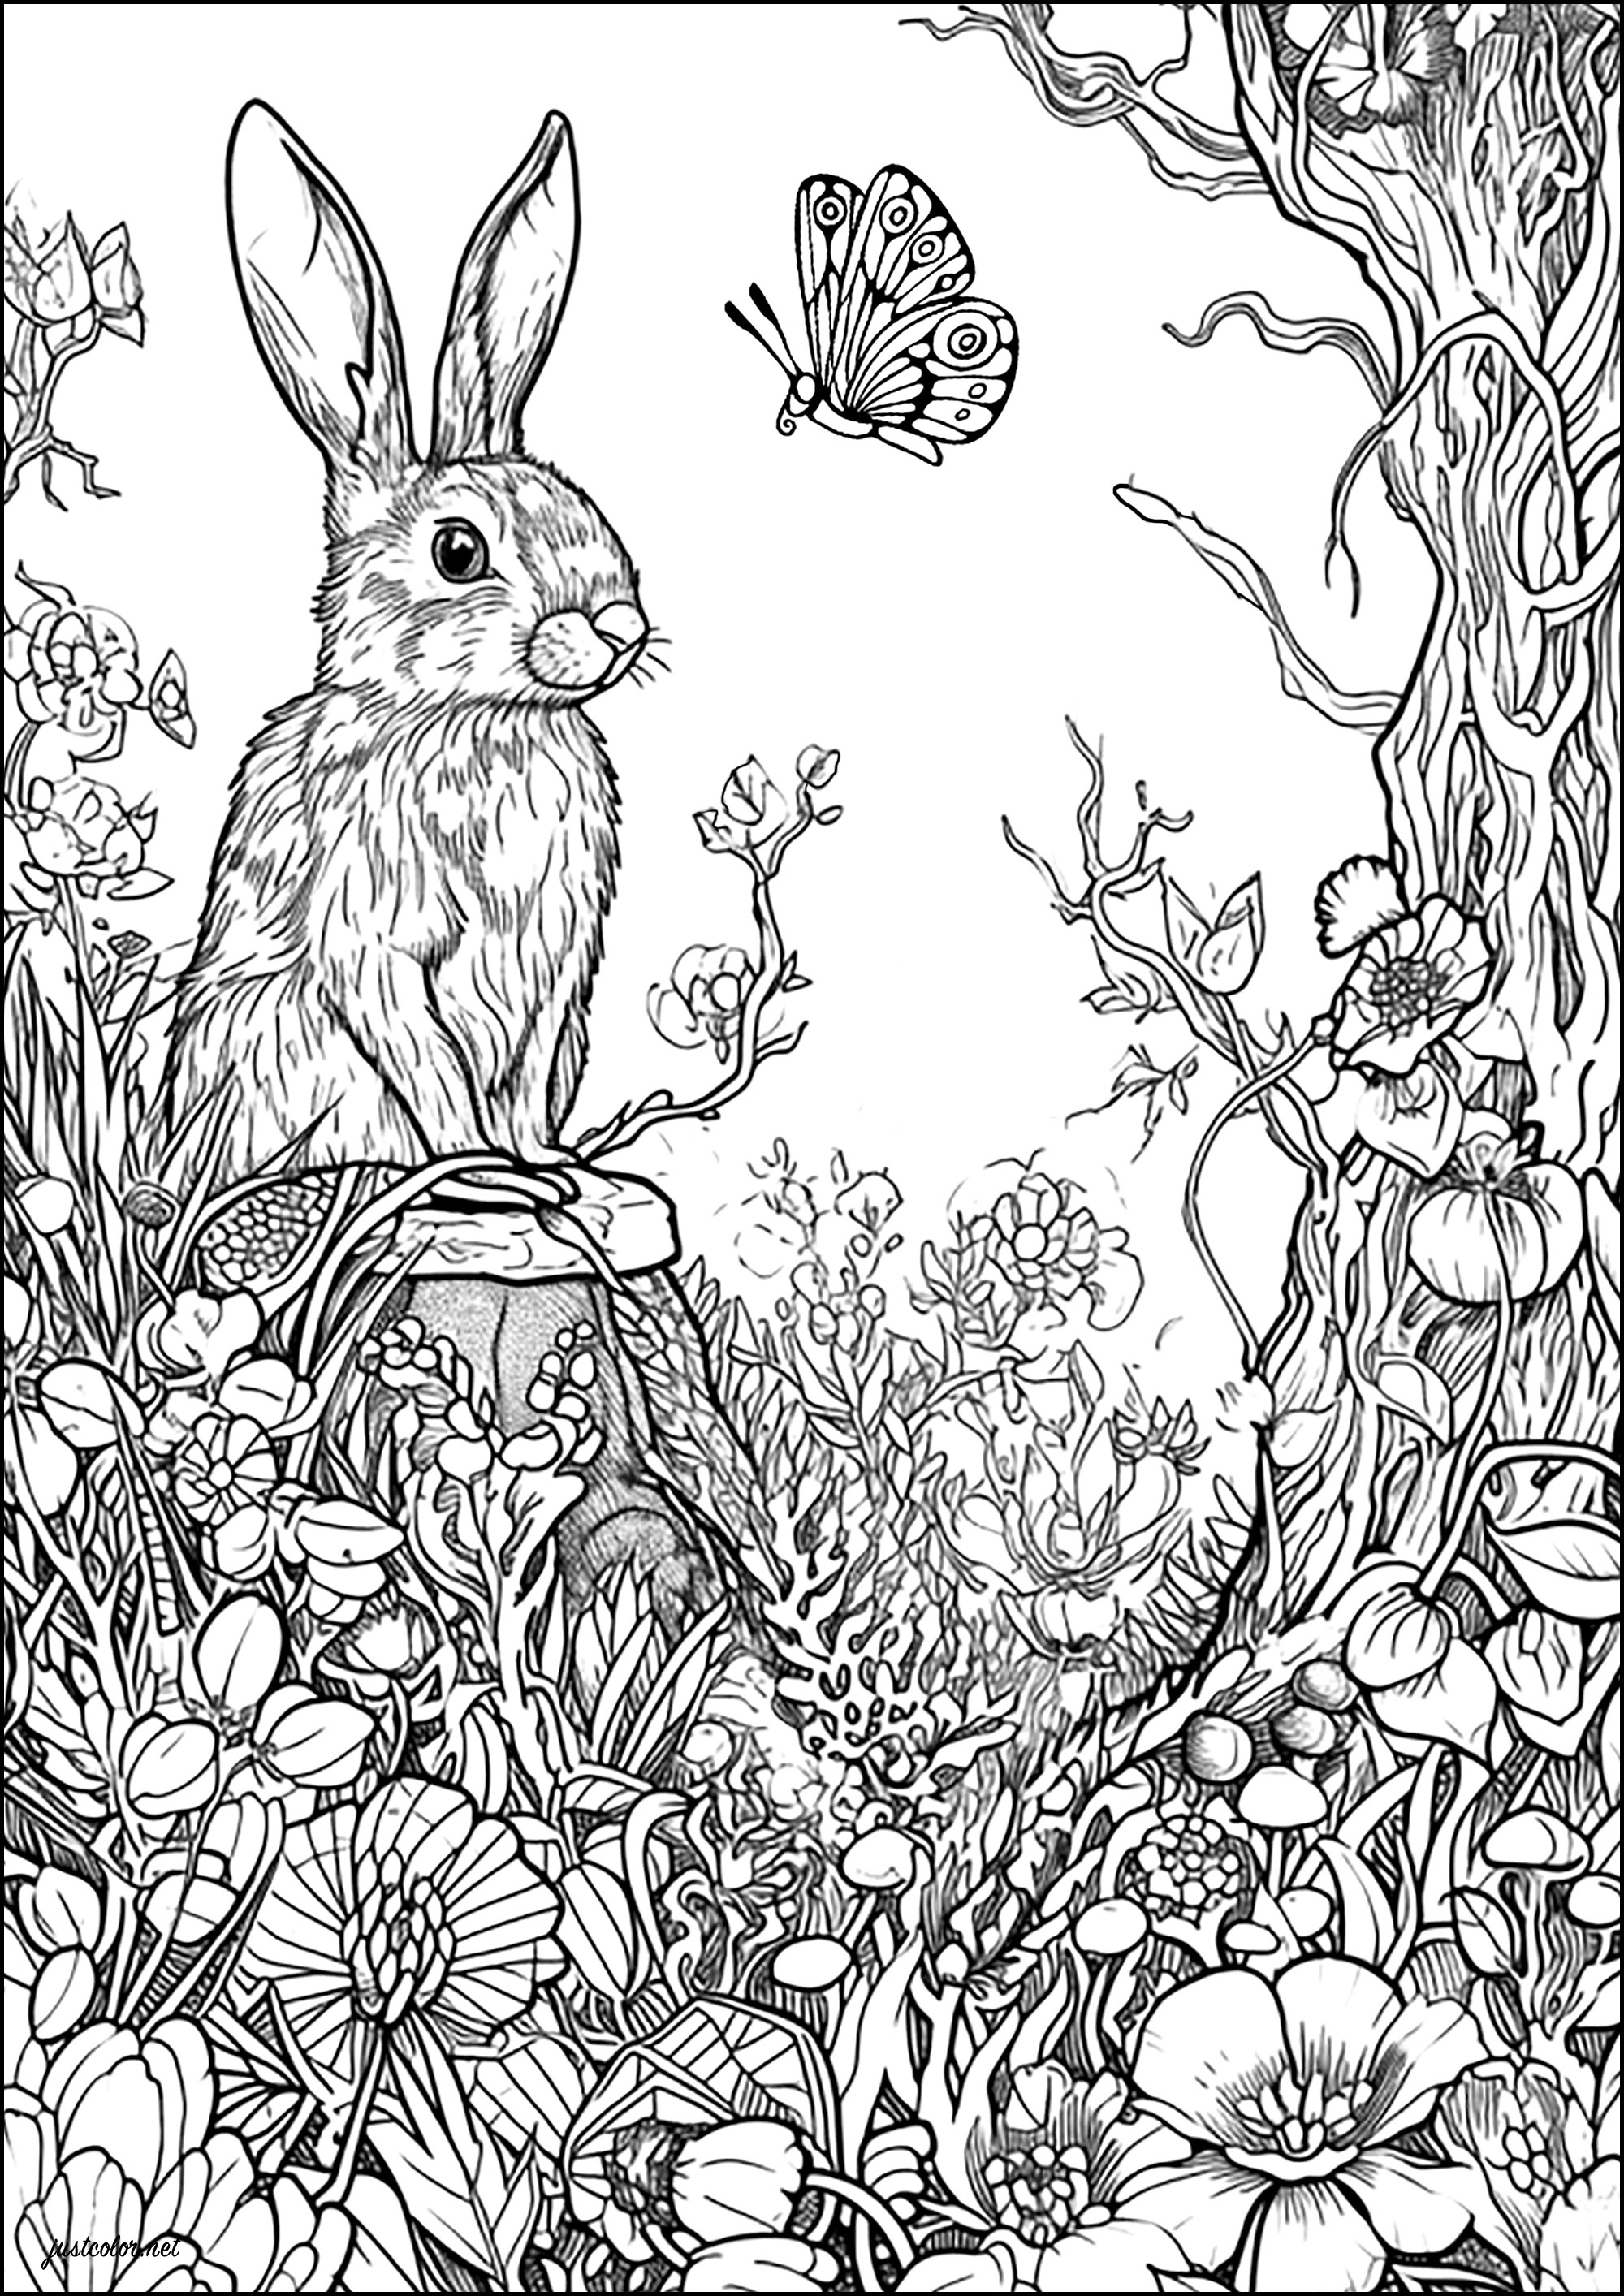 O coelho e a borboleta. Colora este belo coelho e a borboleta com a qual parece estar a conversar, bem como as muitas flores que os rodeiam nesta floresta encantada.